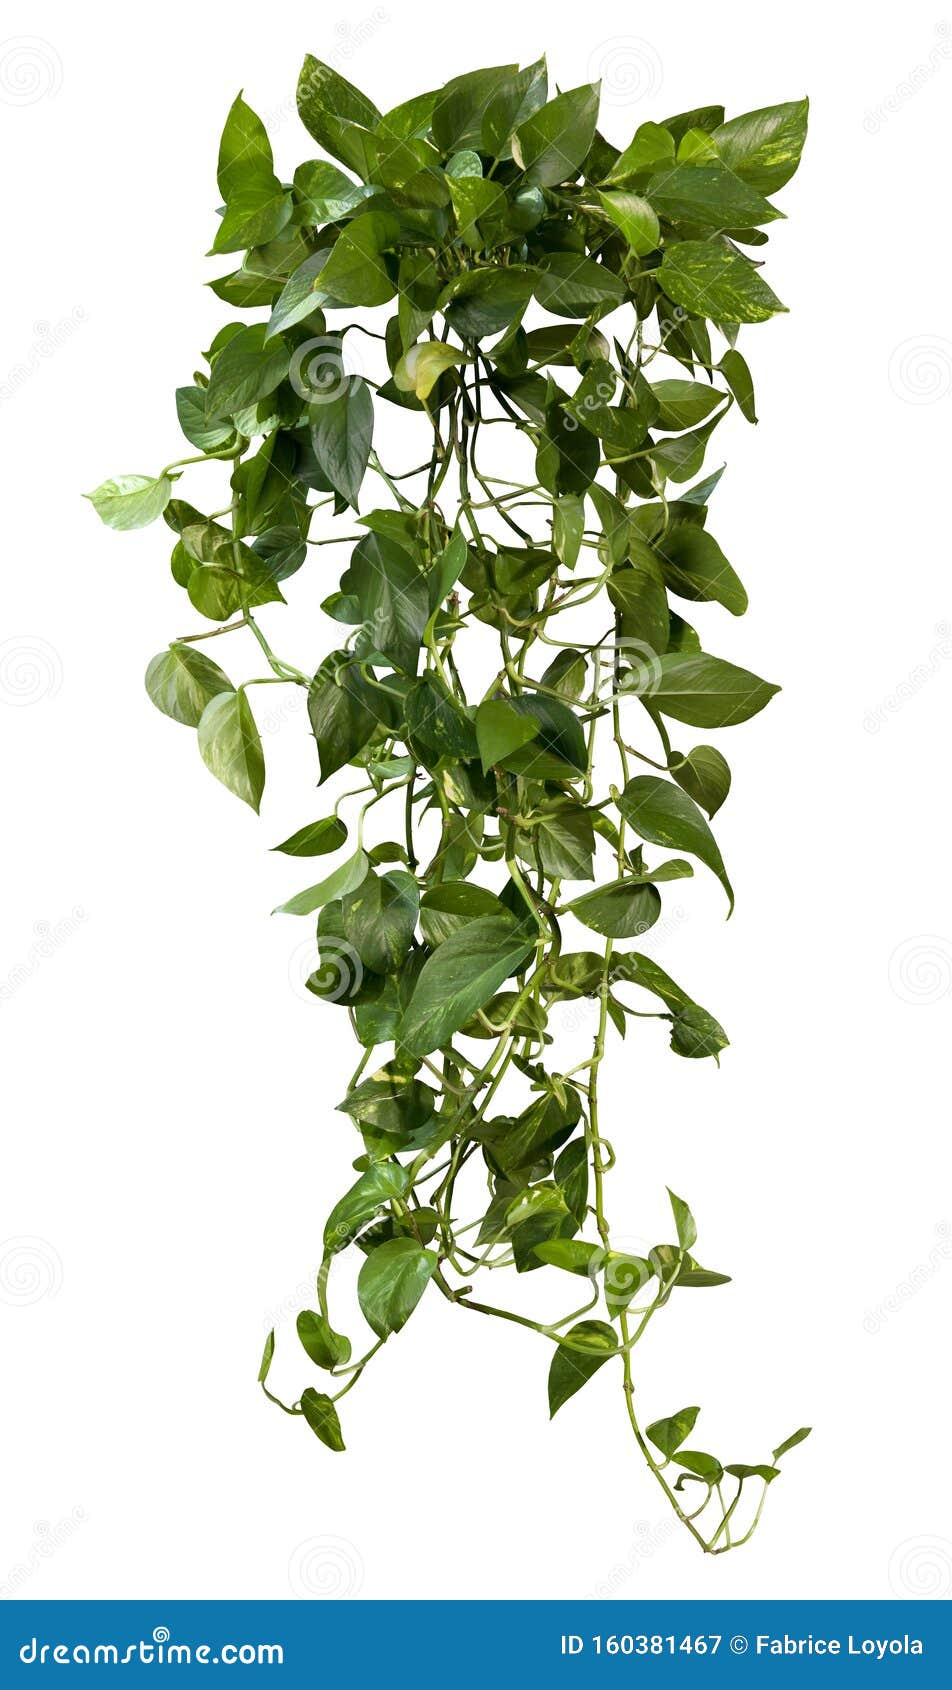 cut out ivy plant. tropical vegetation